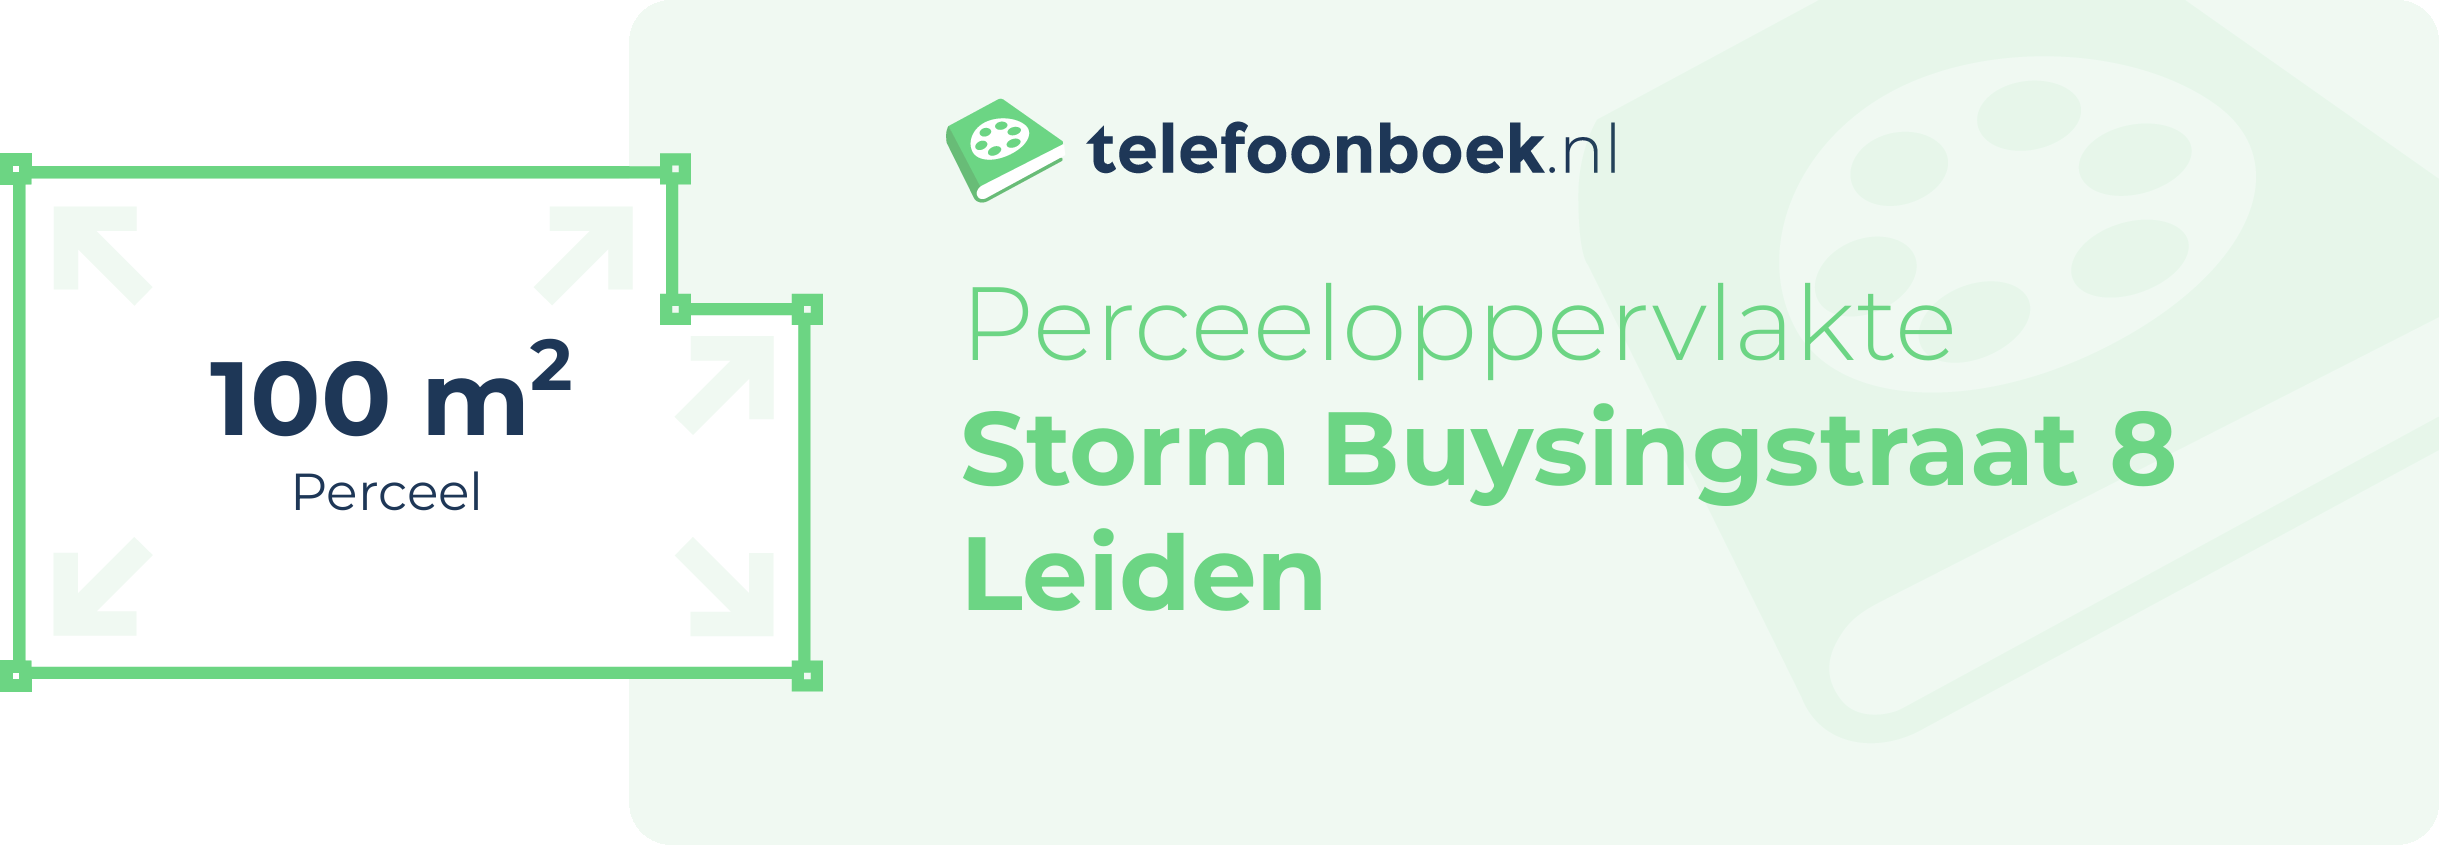 Perceeloppervlakte Storm Buysingstraat 8 Leiden